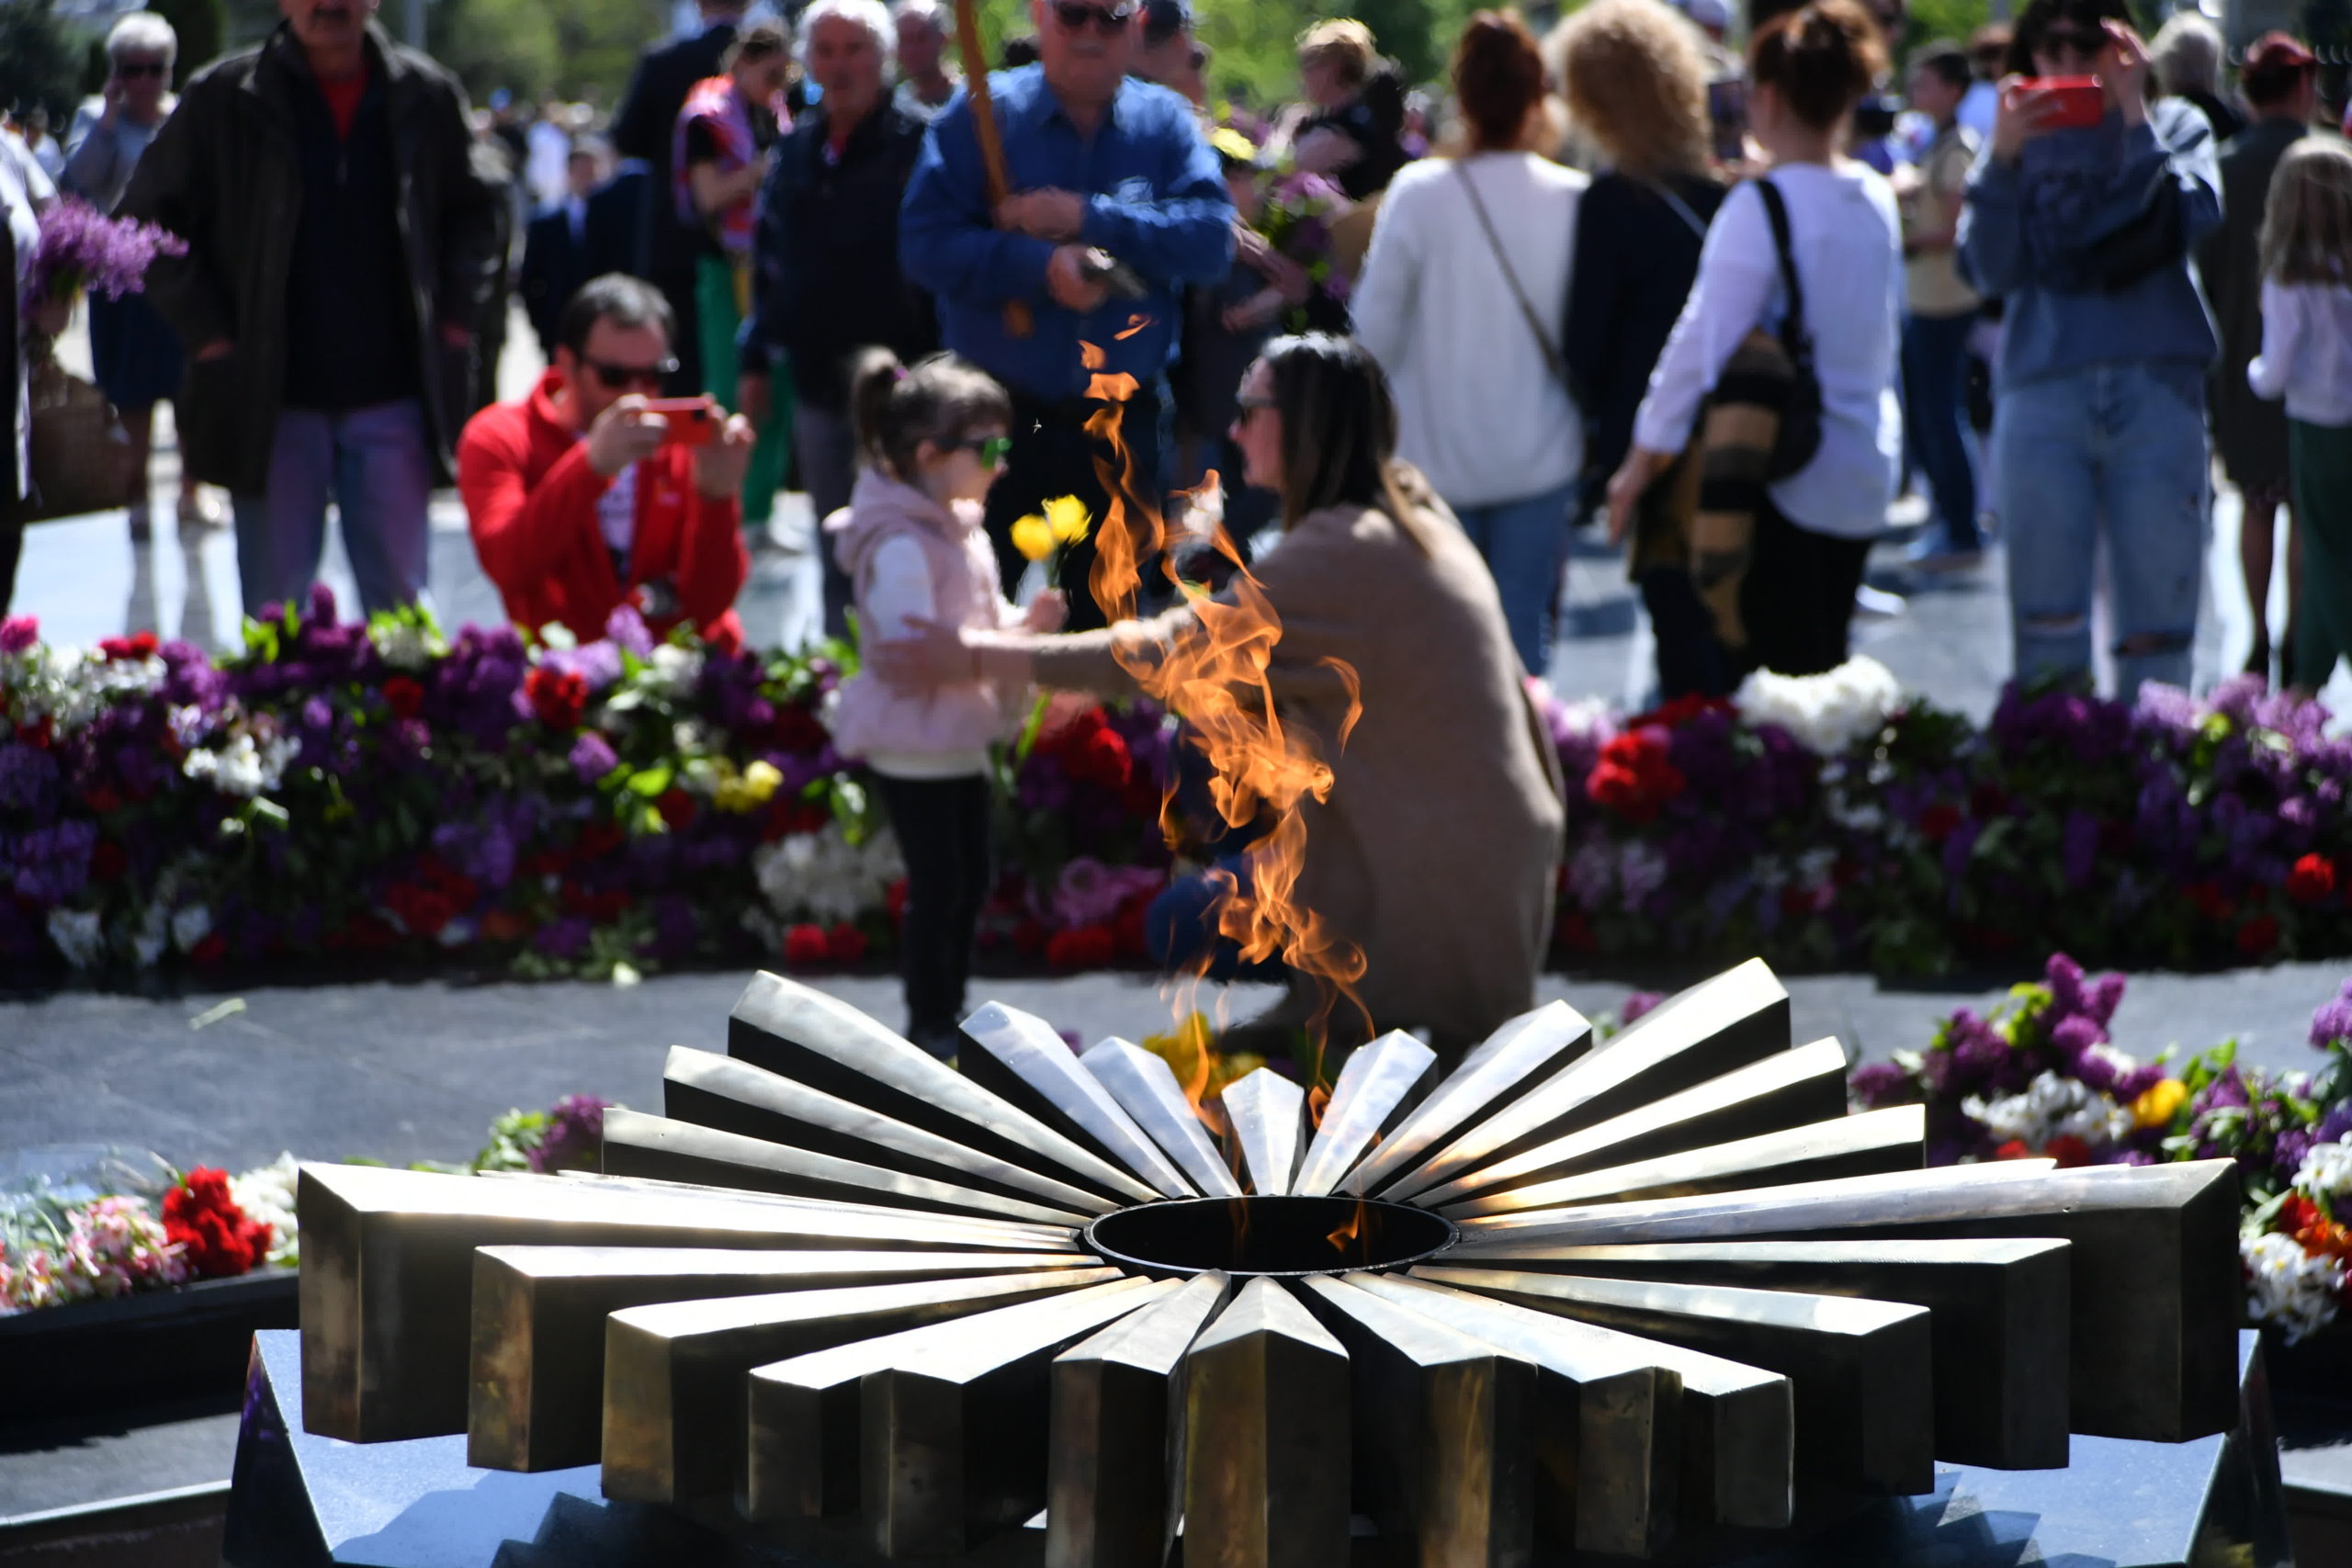 (ФОТО) Георгиевские ленты, «Бессмертный полк» и гранаты на мемориале. Как в Кишиневе отпраздновали 9 мая